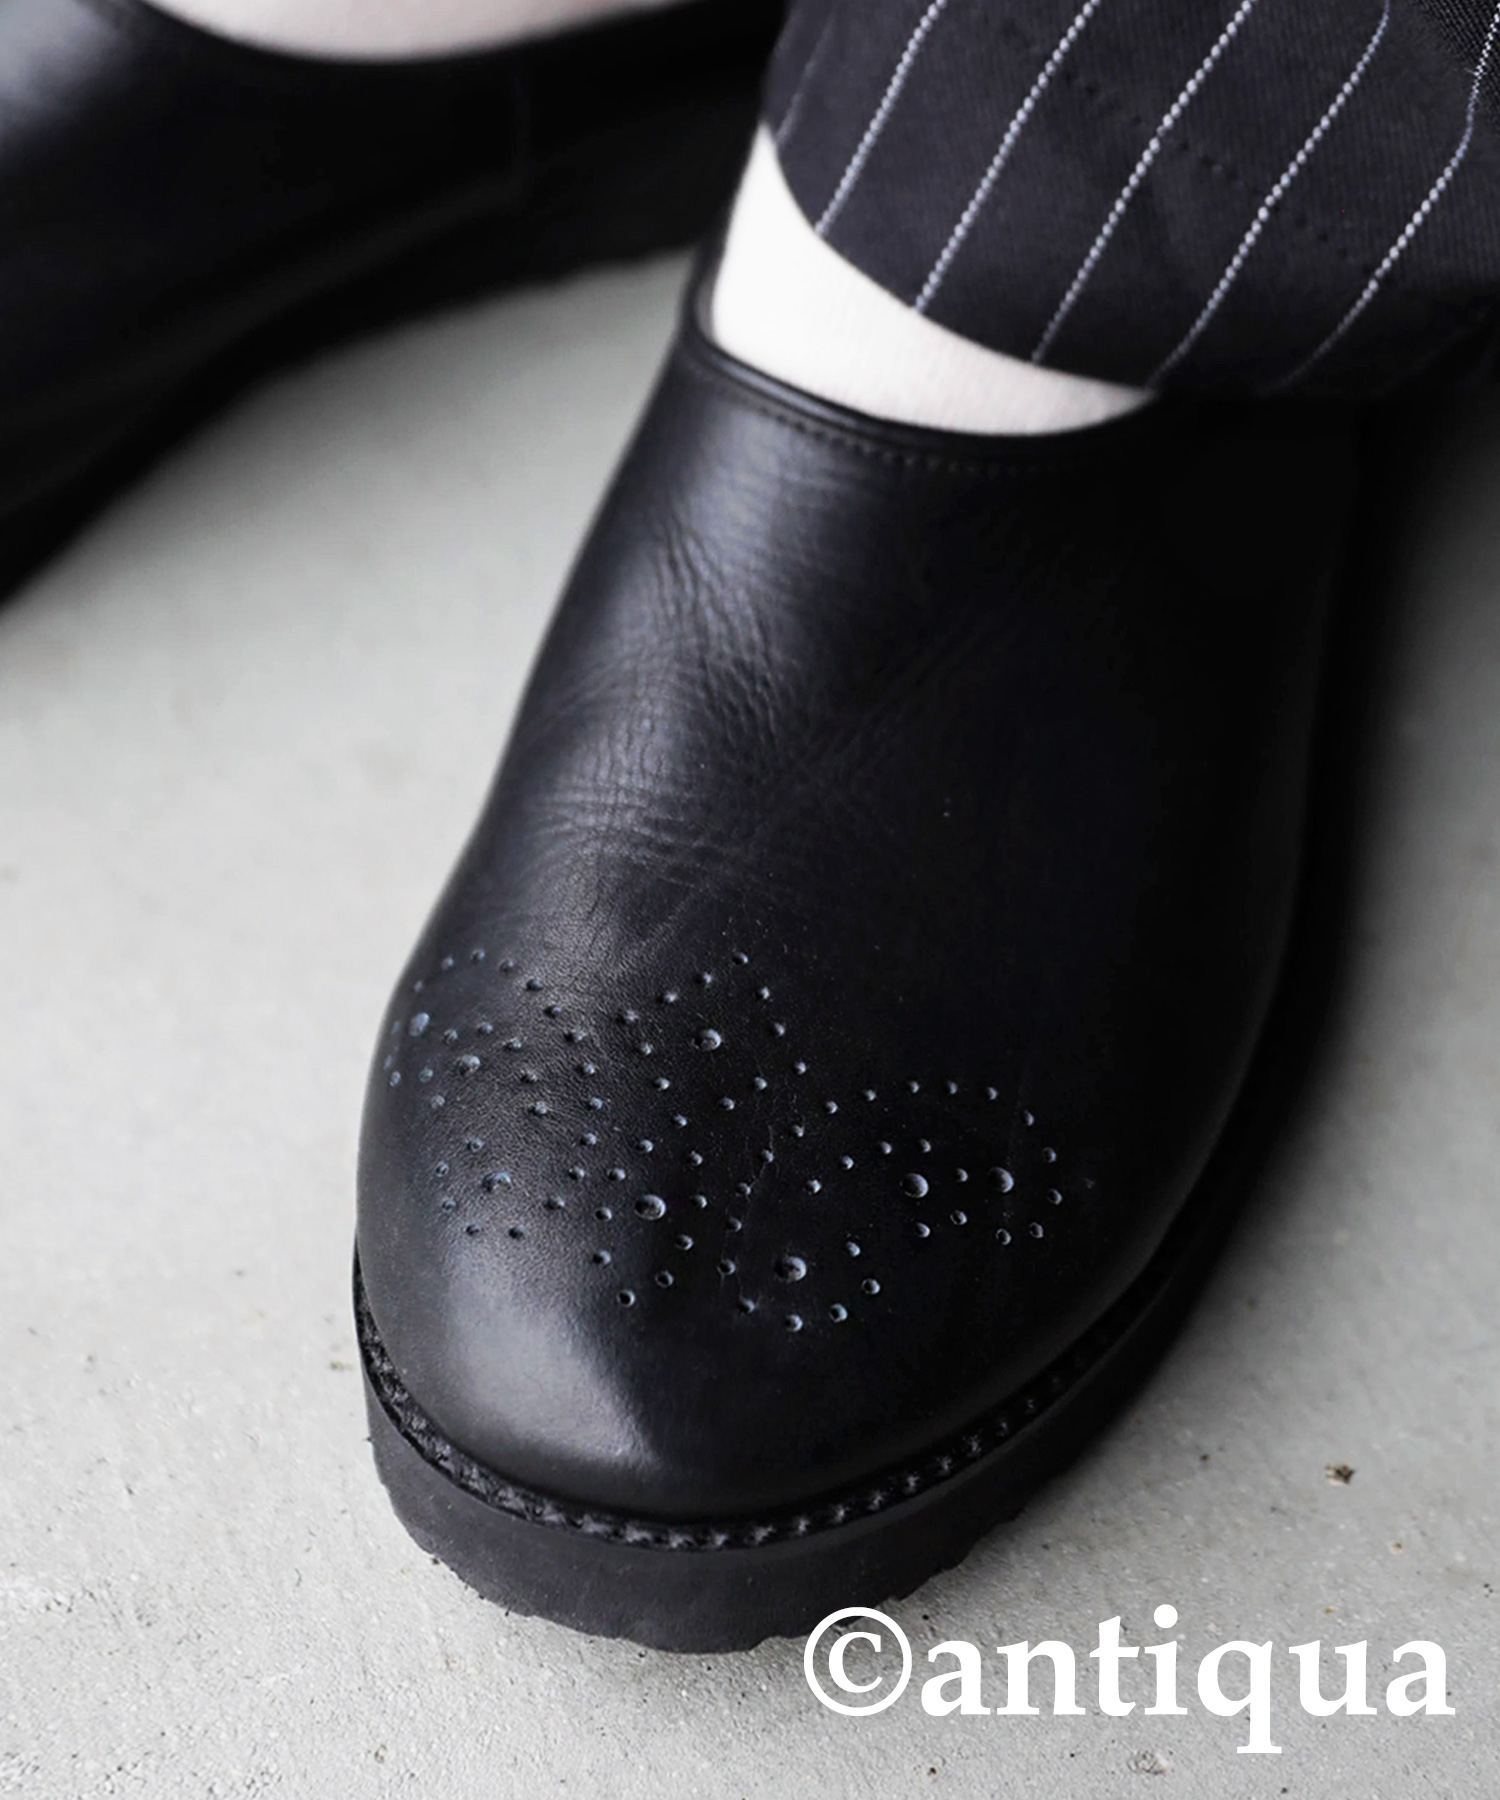 本革 日本製 サボシューズ レディース 靴 レザー サボ 送料無料・メール便不可 母の日